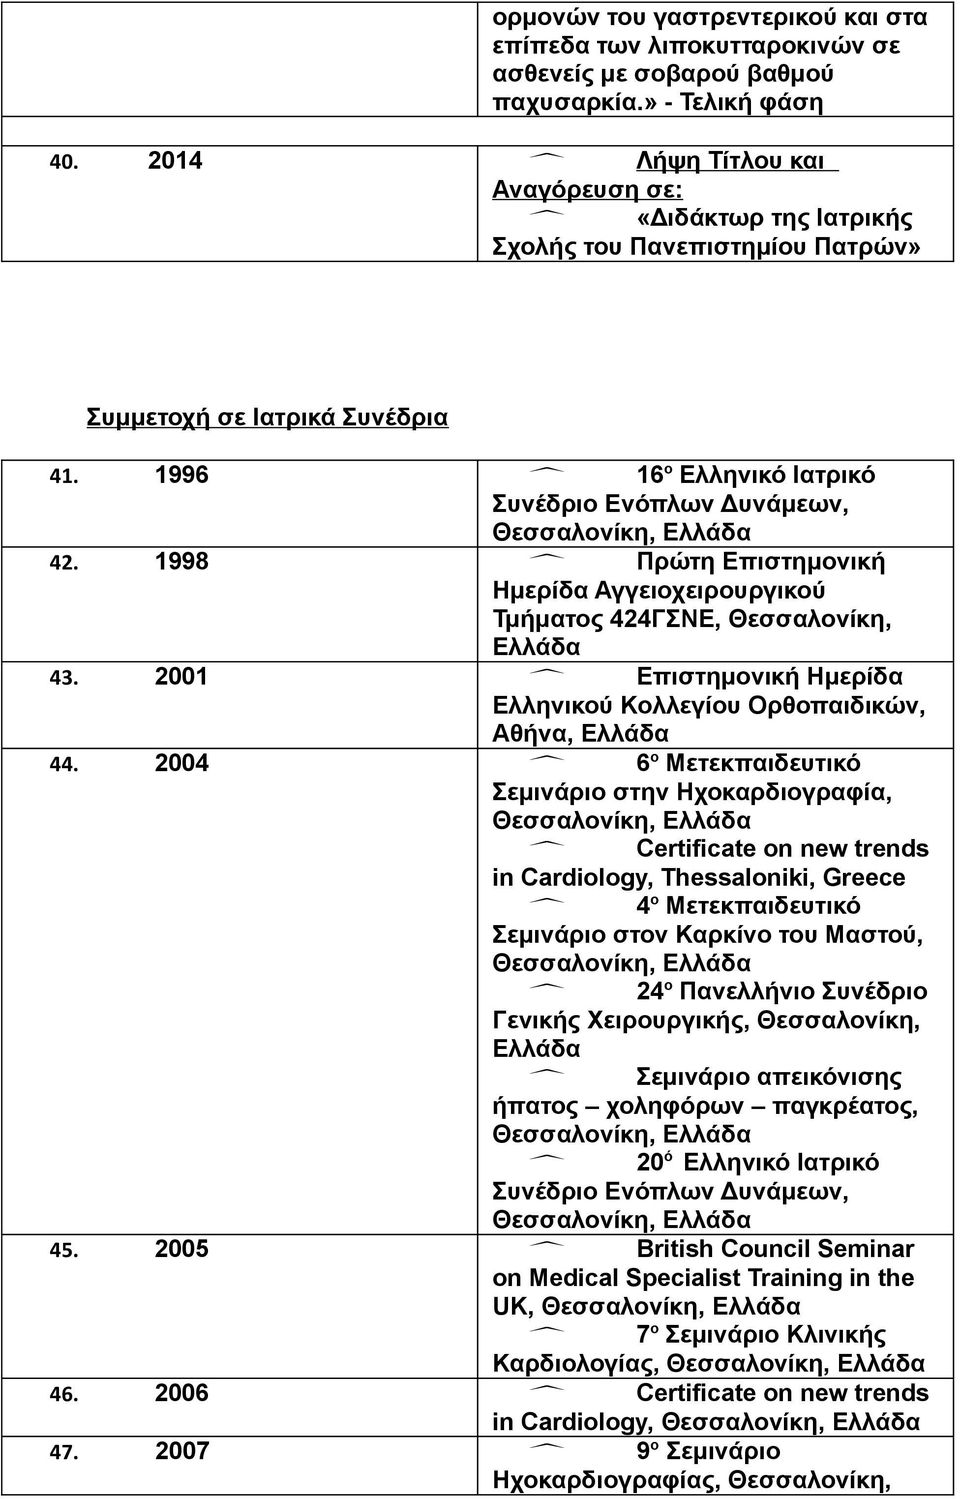 1998 Πρώτη Επιστημονική Ημερίδα Αγγειοχειρουργικού Τμήματος 424ΓΣΝΕ, Θεσσαλονίκη, 43. 2001 Επιστημονική Ημερίδα Ελληνικού Κολλεγίου Ορθοπαιδικών, Αθήνα, 44.